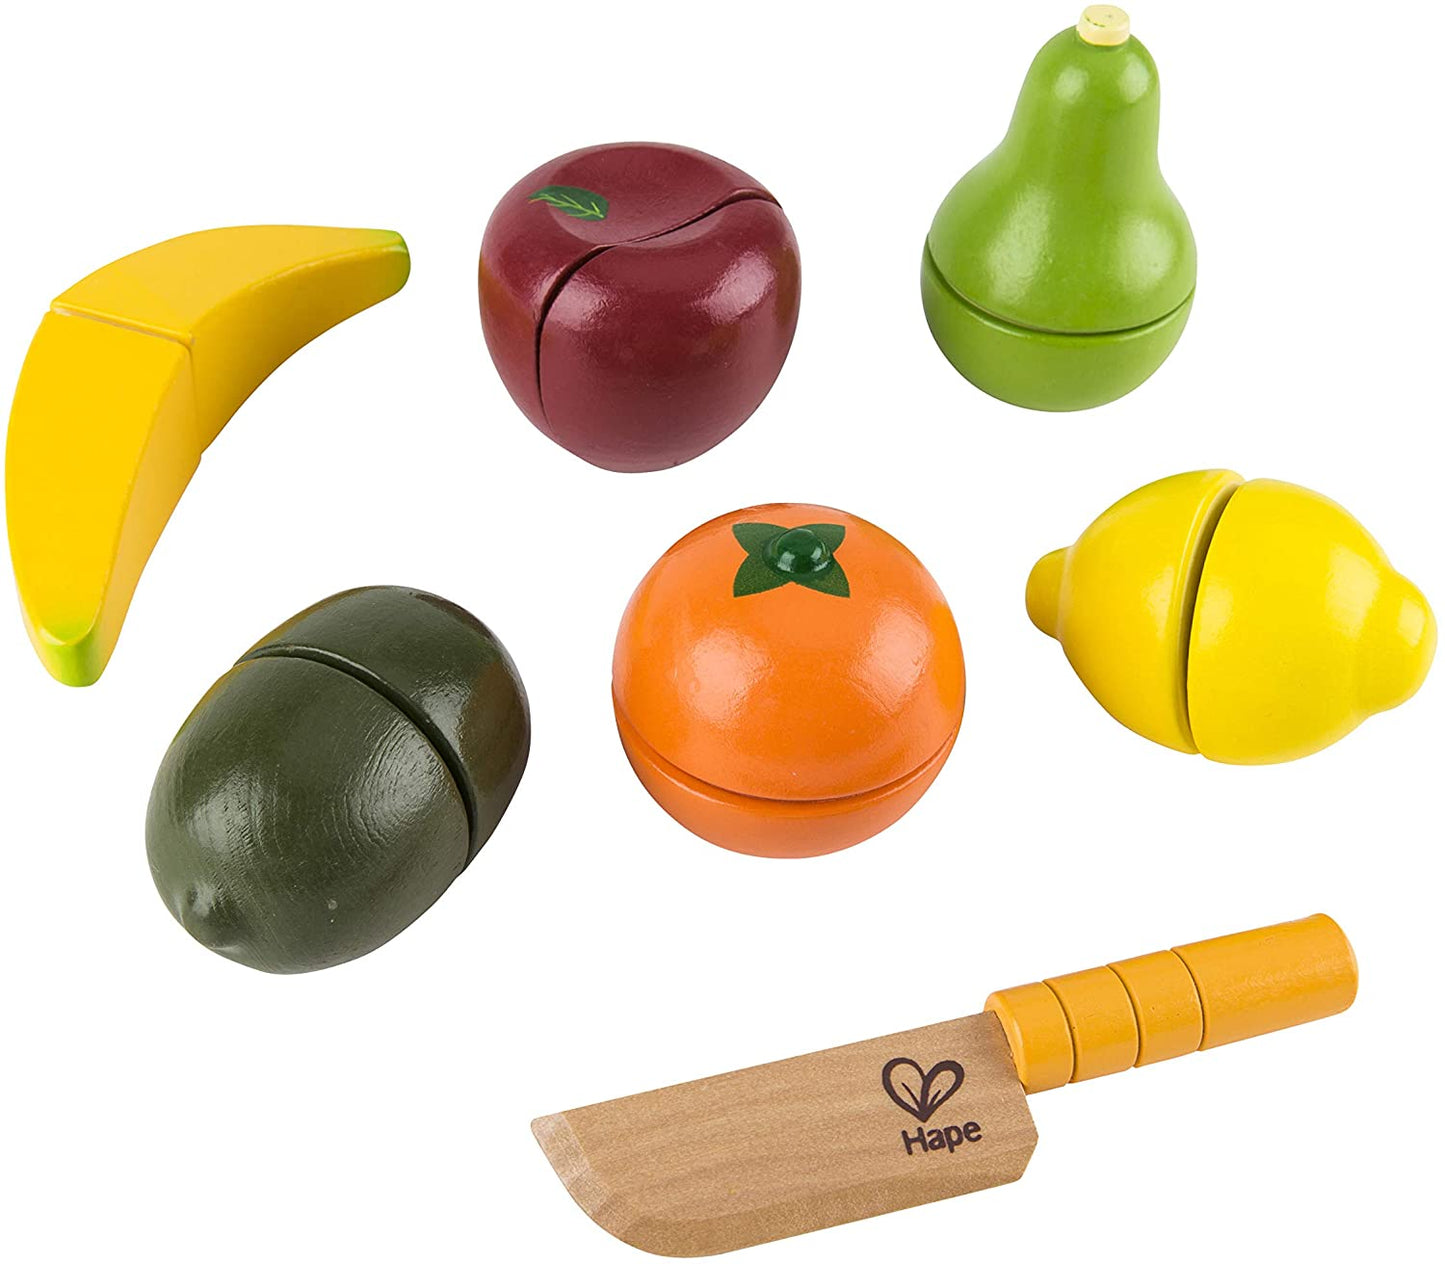 Hape - Frutas frescas - Play Food de madeira com faca segura para crianças